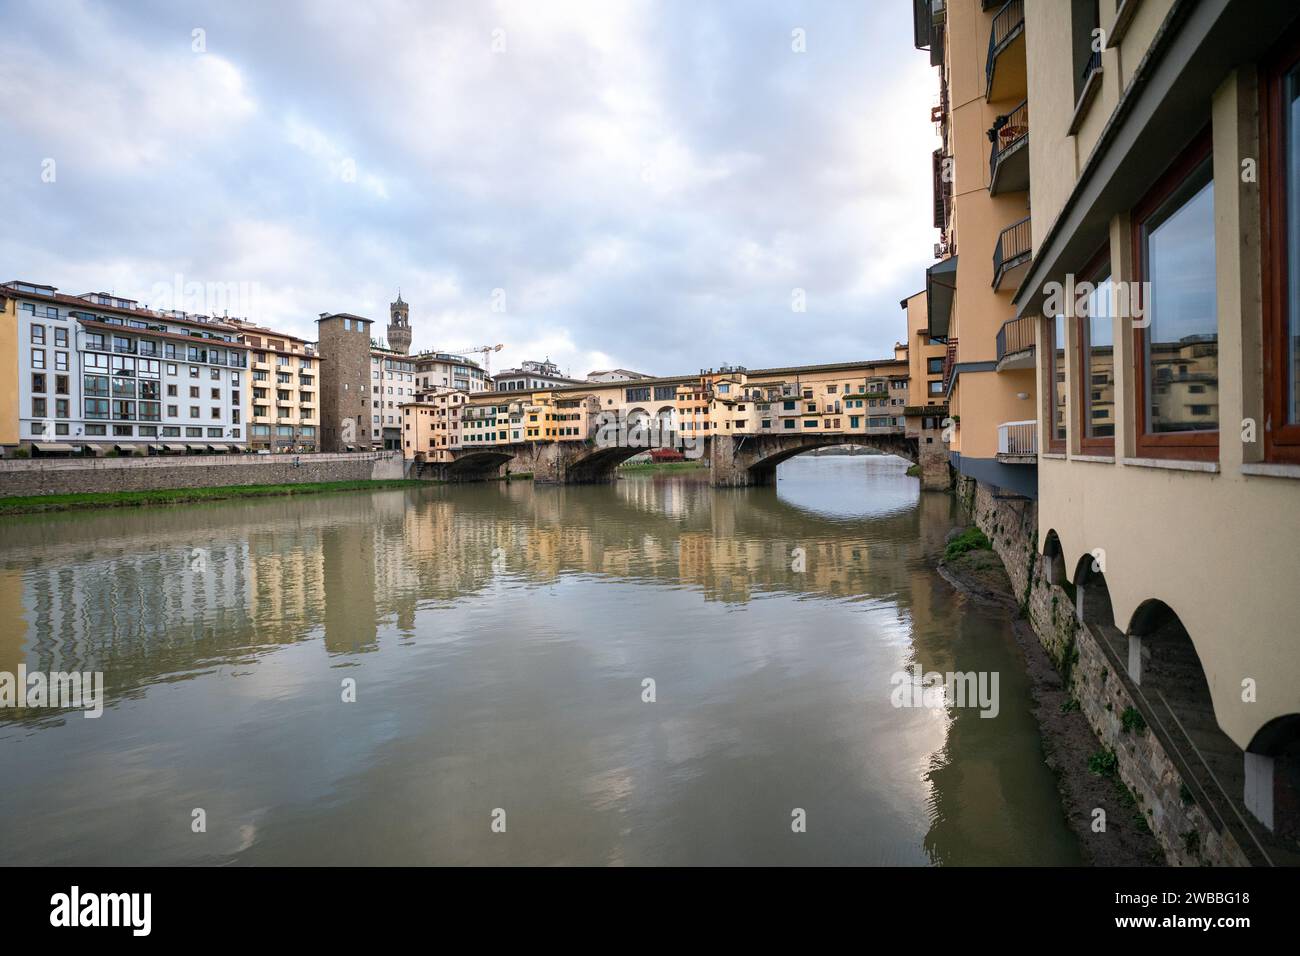 Ponte Vecchio bridge in Florence, Italy Stock Photo